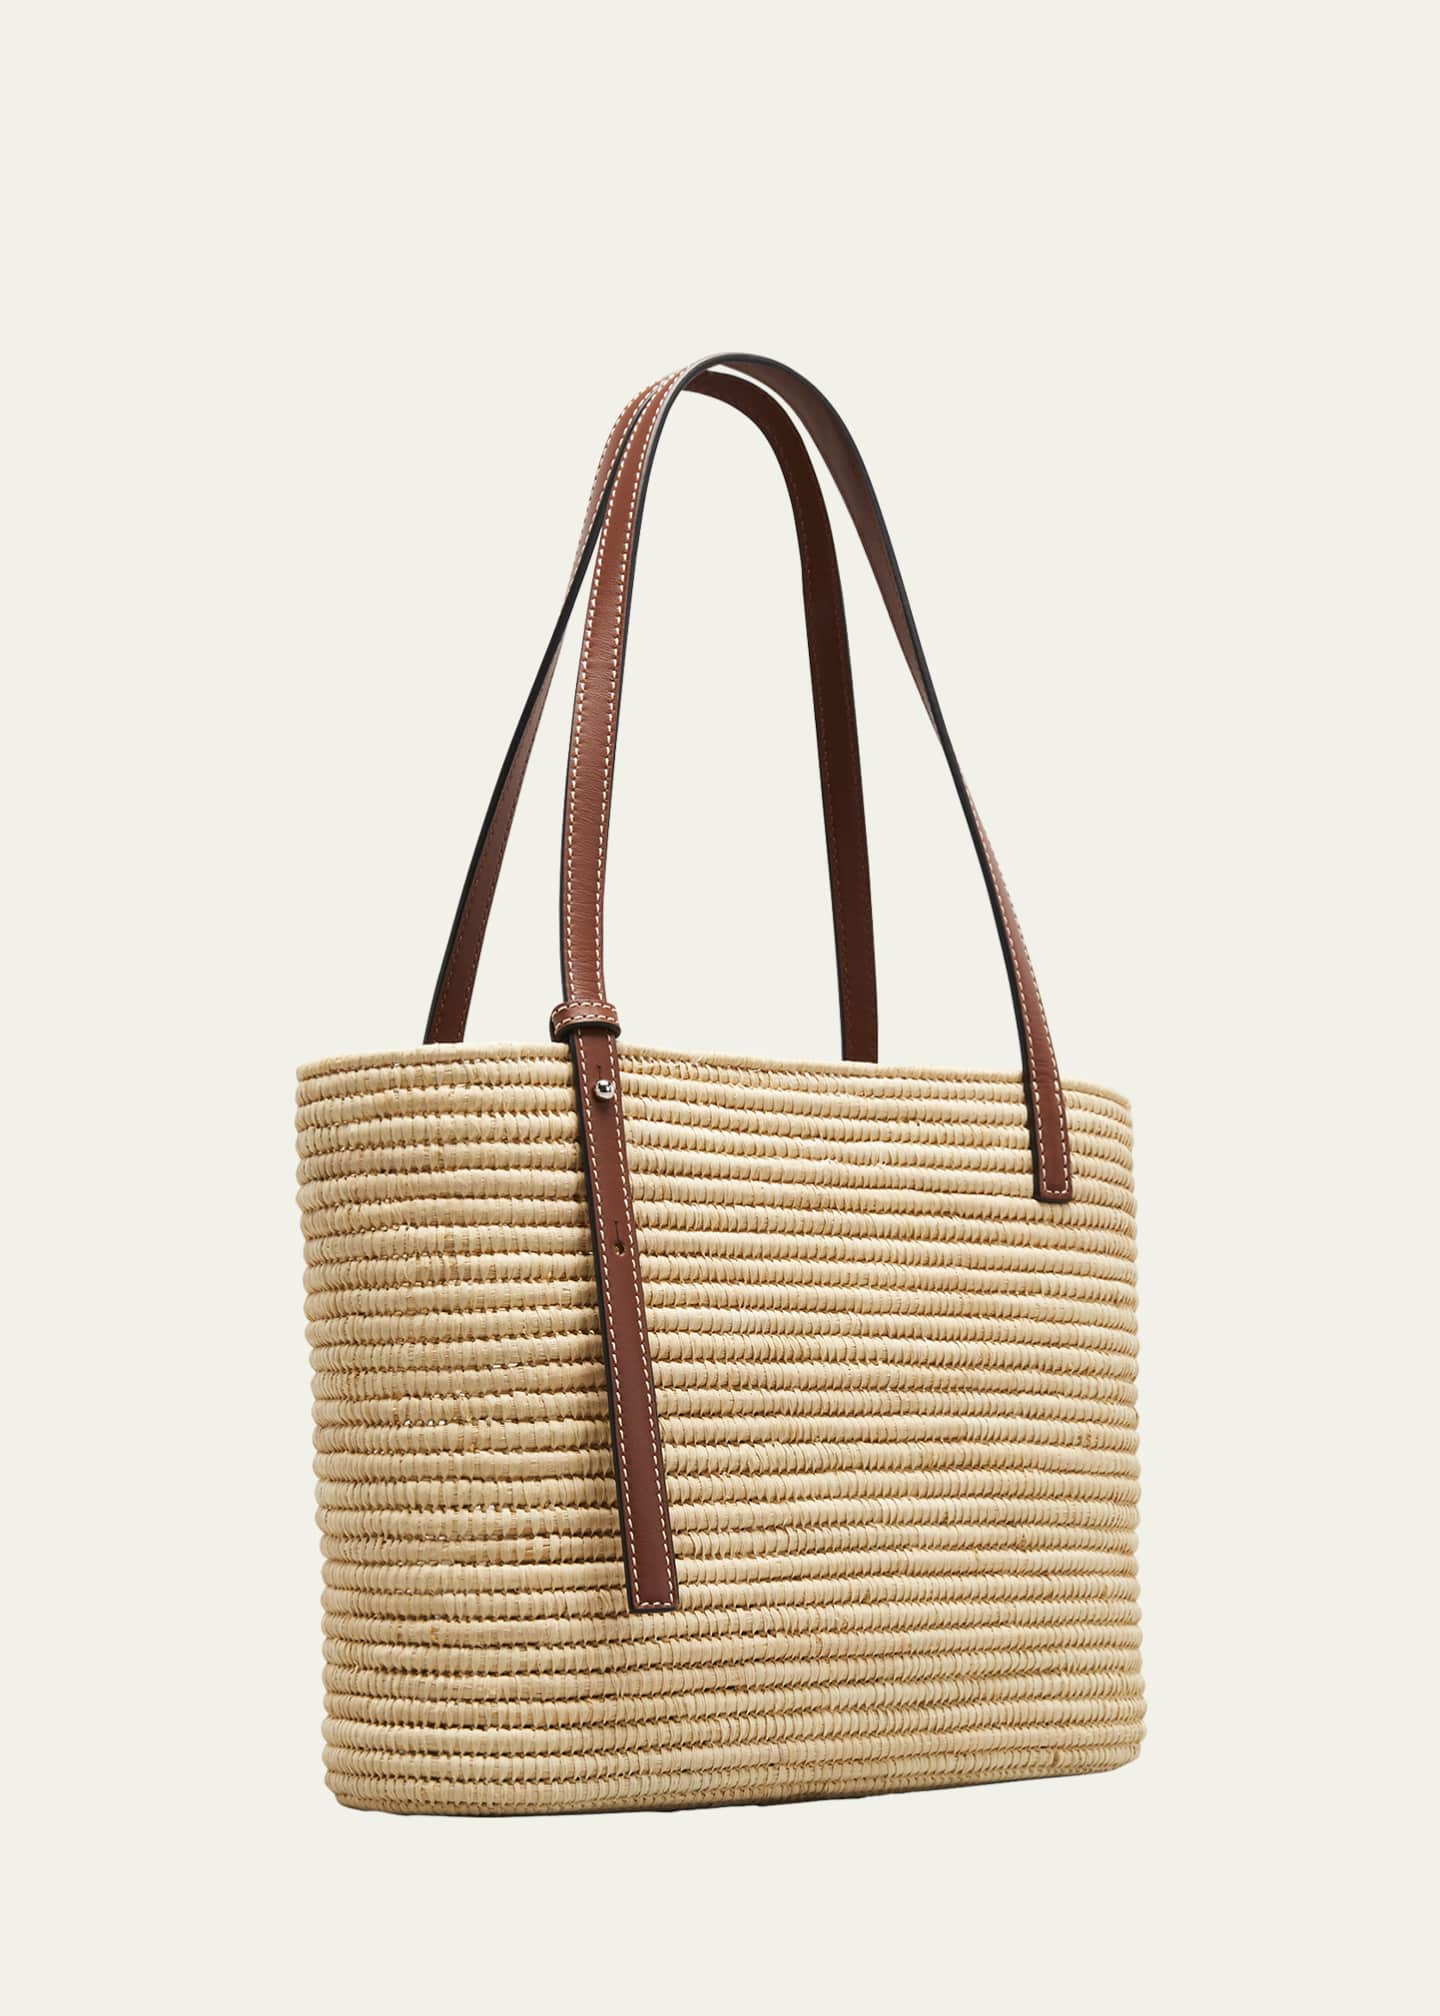 Loewe x Paula's Ibiza Small Woven Basket Top-Handle Bag